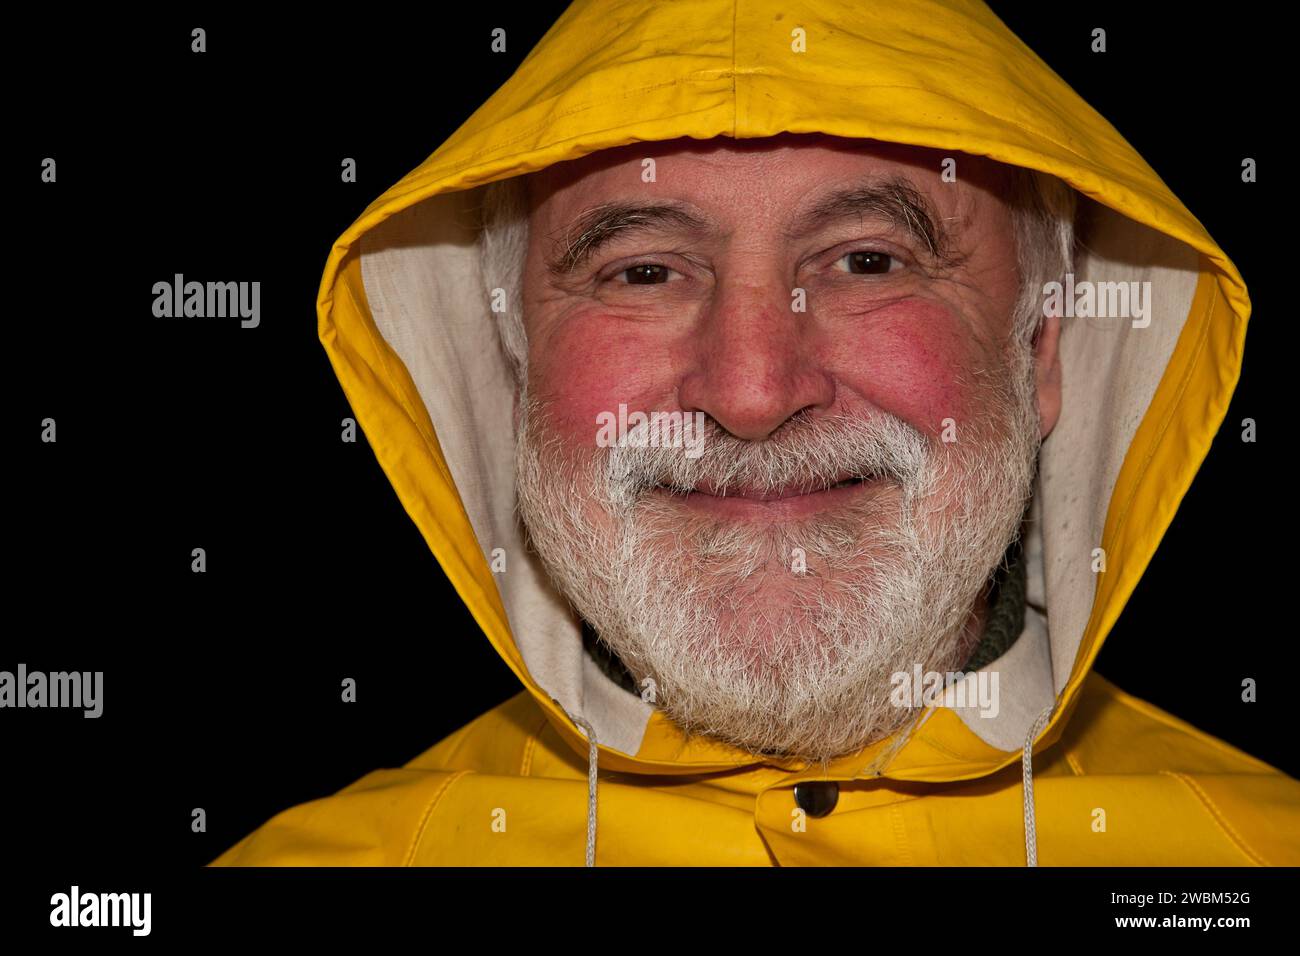 Un marin à la retraite, souriant brillamment et plein de joie sous son capot jaune, prêt pour la prochaine aventure sur terre ferme! Banque D'Images